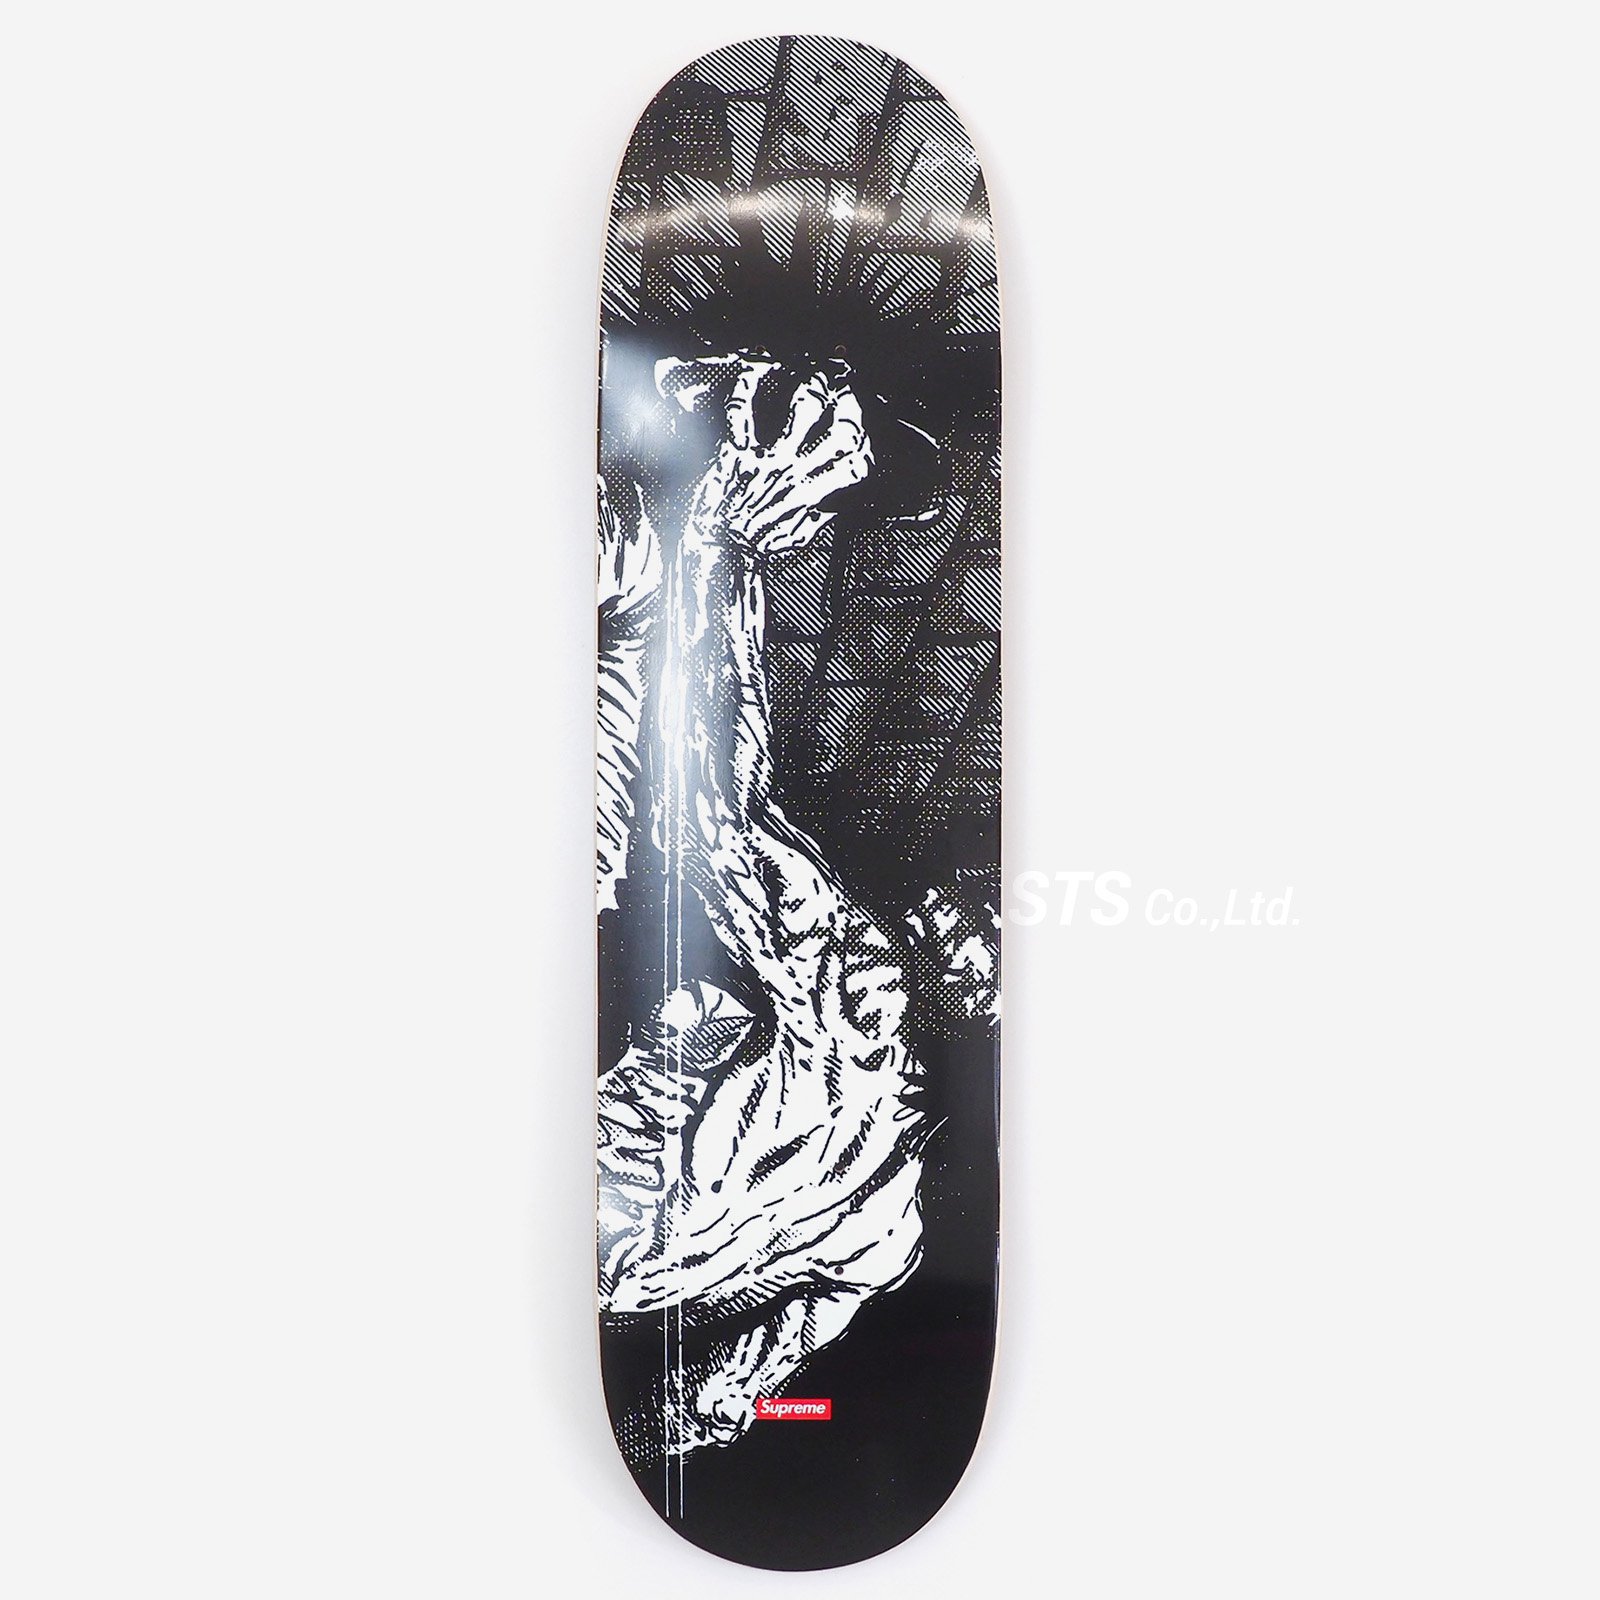 Supreme/The Crow Skateboard - UG.SHAFT